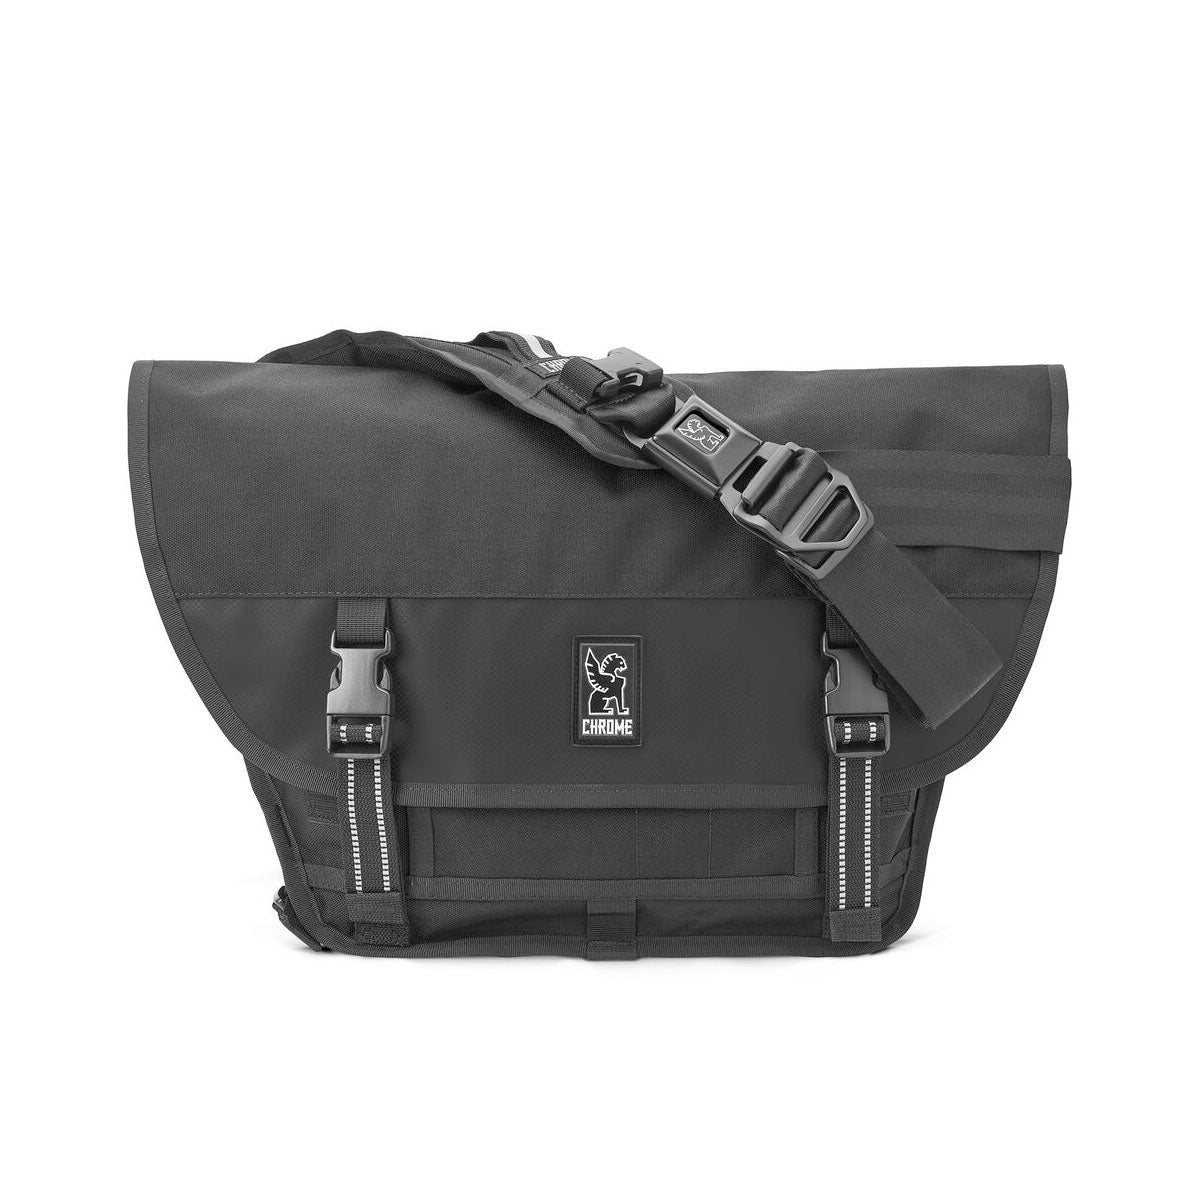 Chrome - Mini Metro Messenger Bag Black